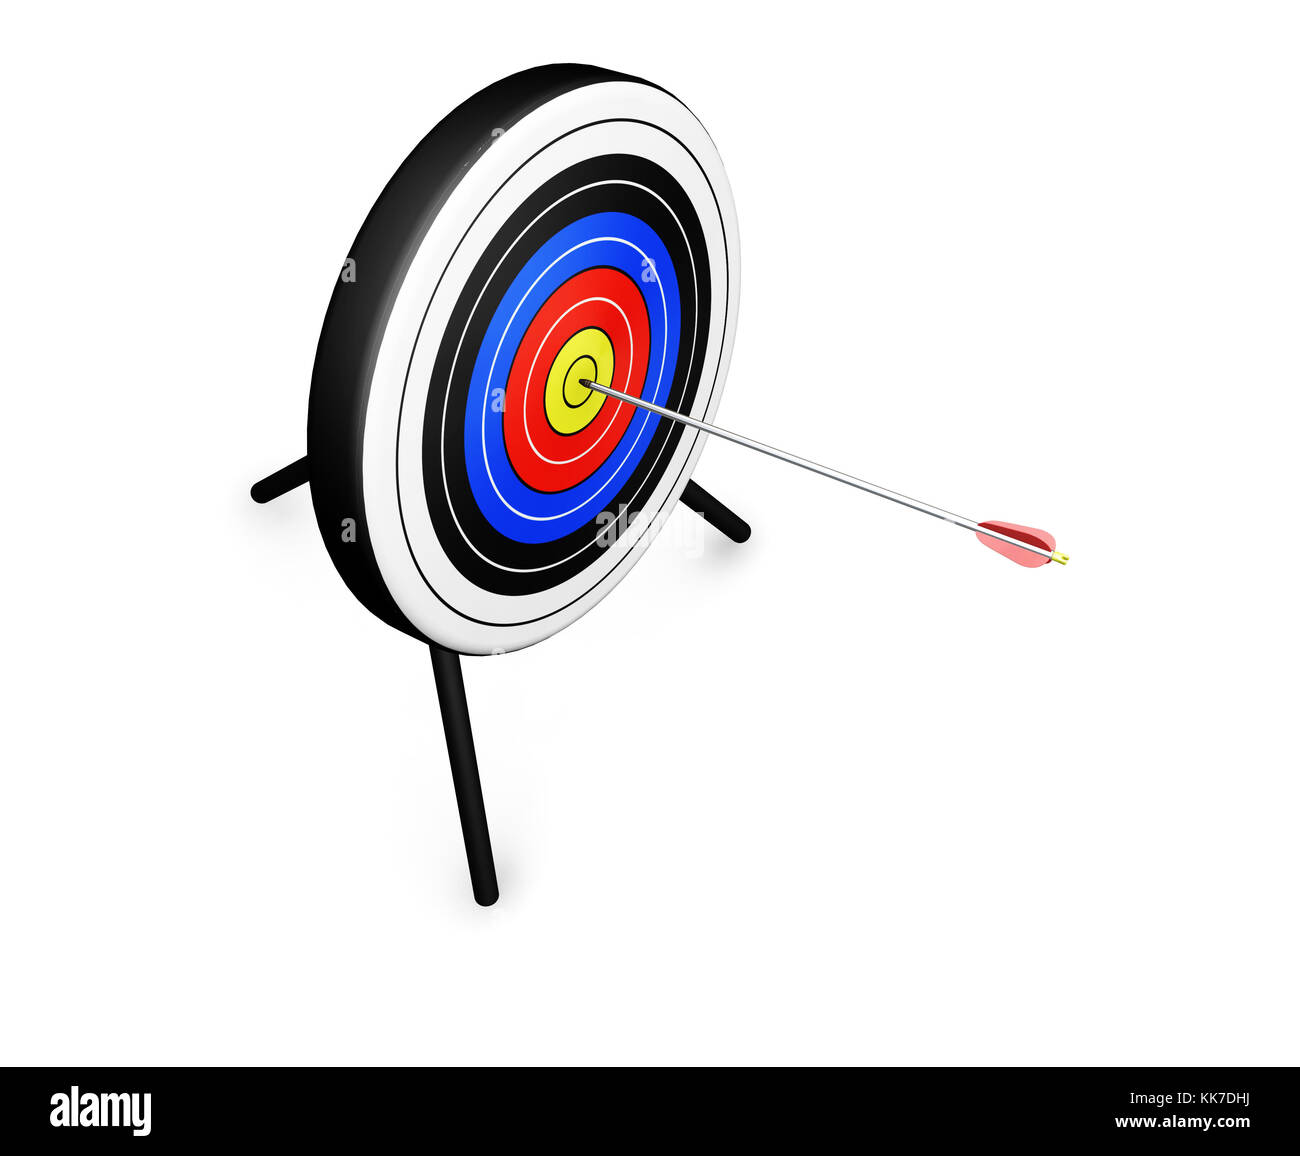 Target object. Стрела hitting the Bullseye. Яблочко снайпера. Цель черно белая в яблочко.